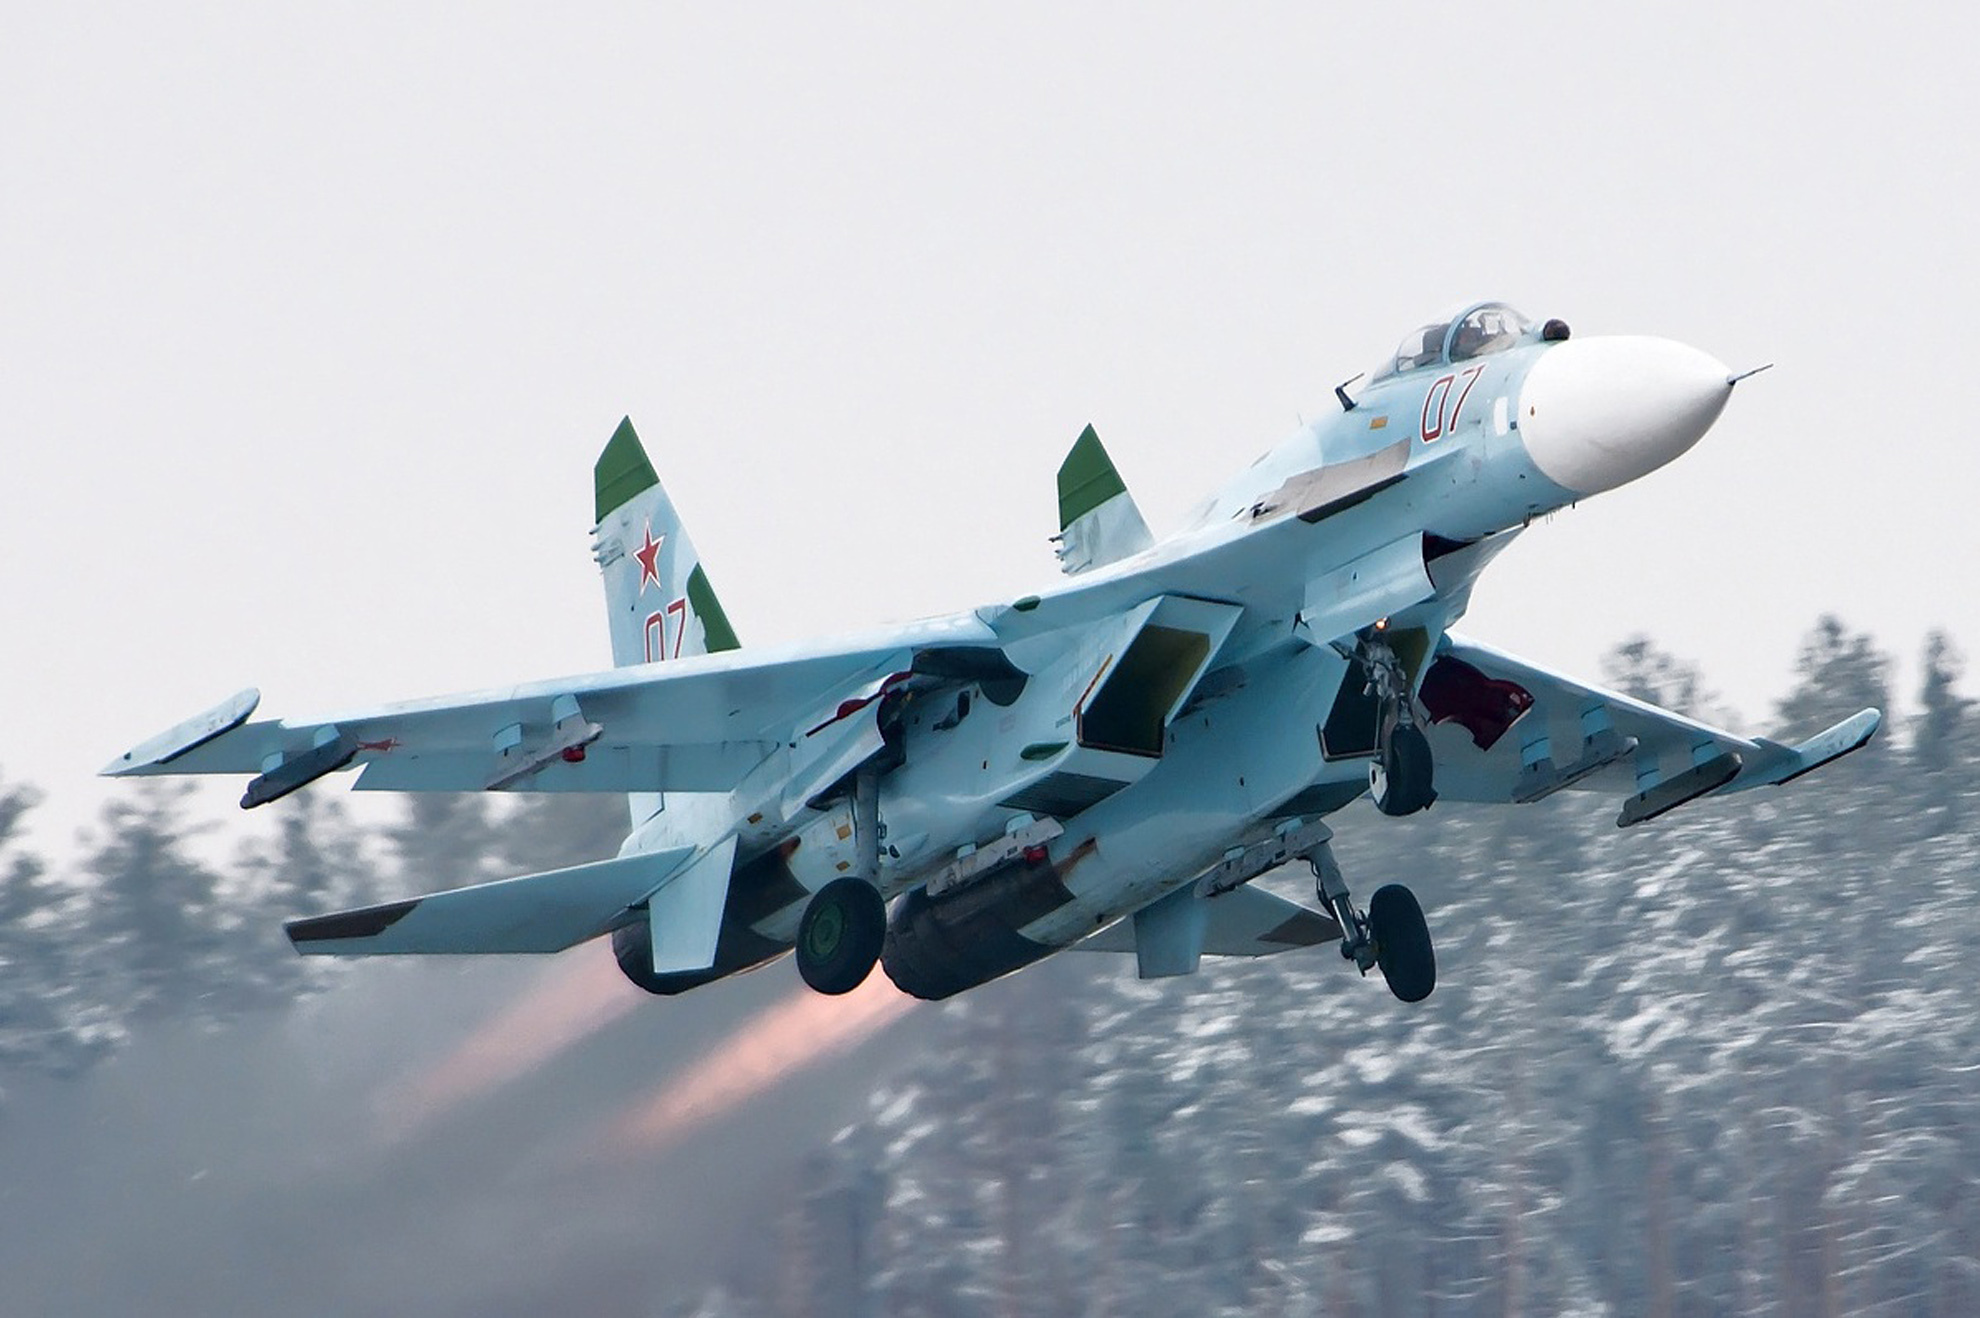 Máy bay Su-27 là thế hệ ‘lão tướng’ huyền thoại trong số các tiêm kích do Liên Xô sản xuất